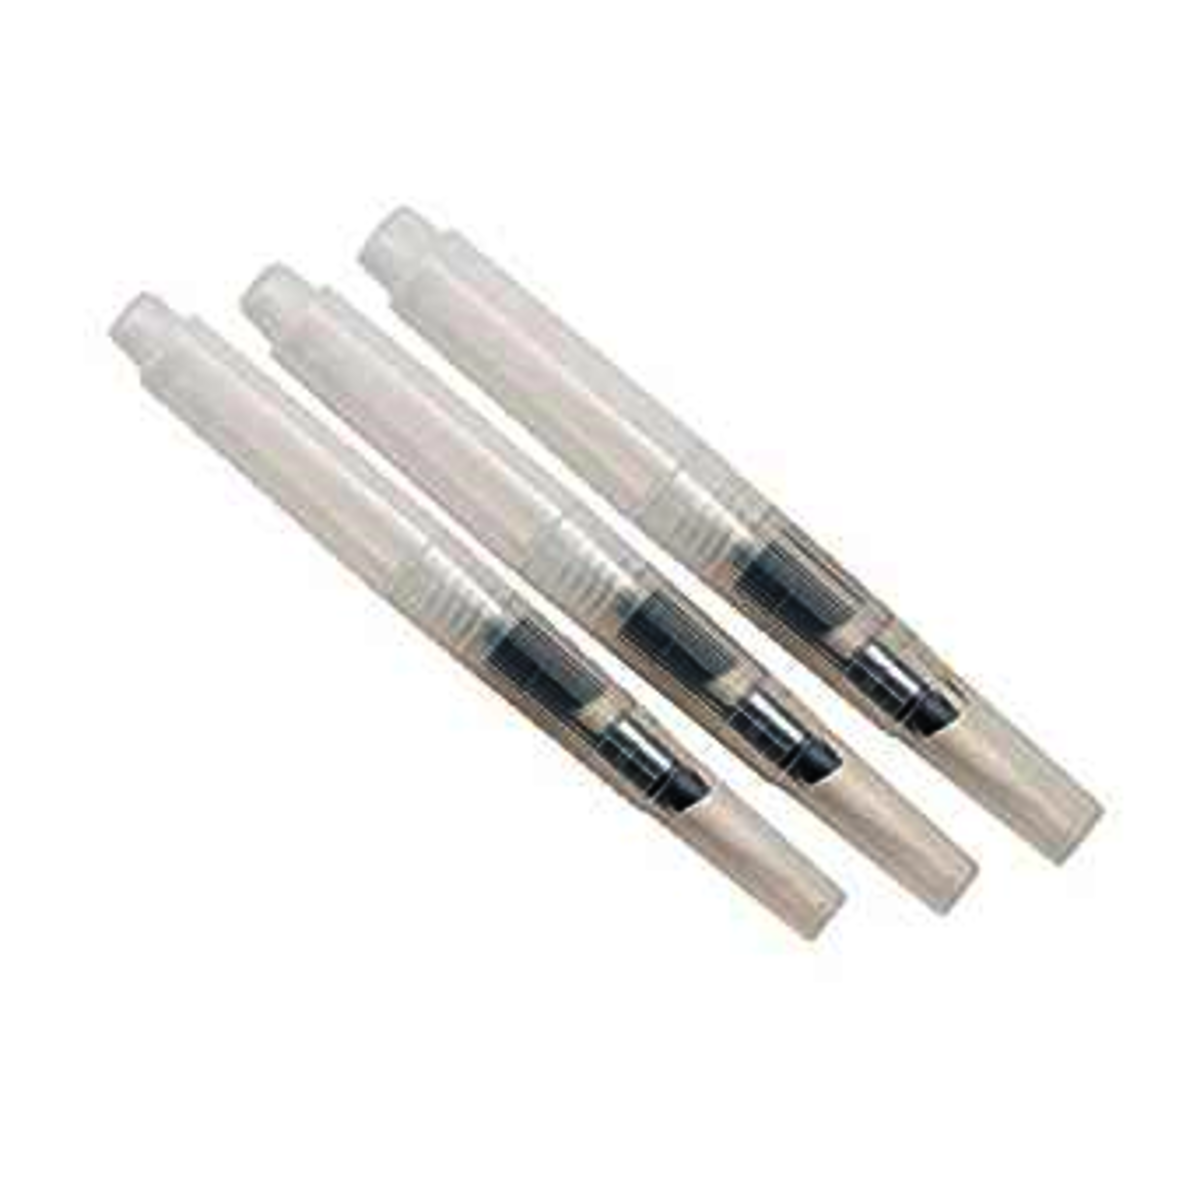 Water Brush Pens (Pack of 3)